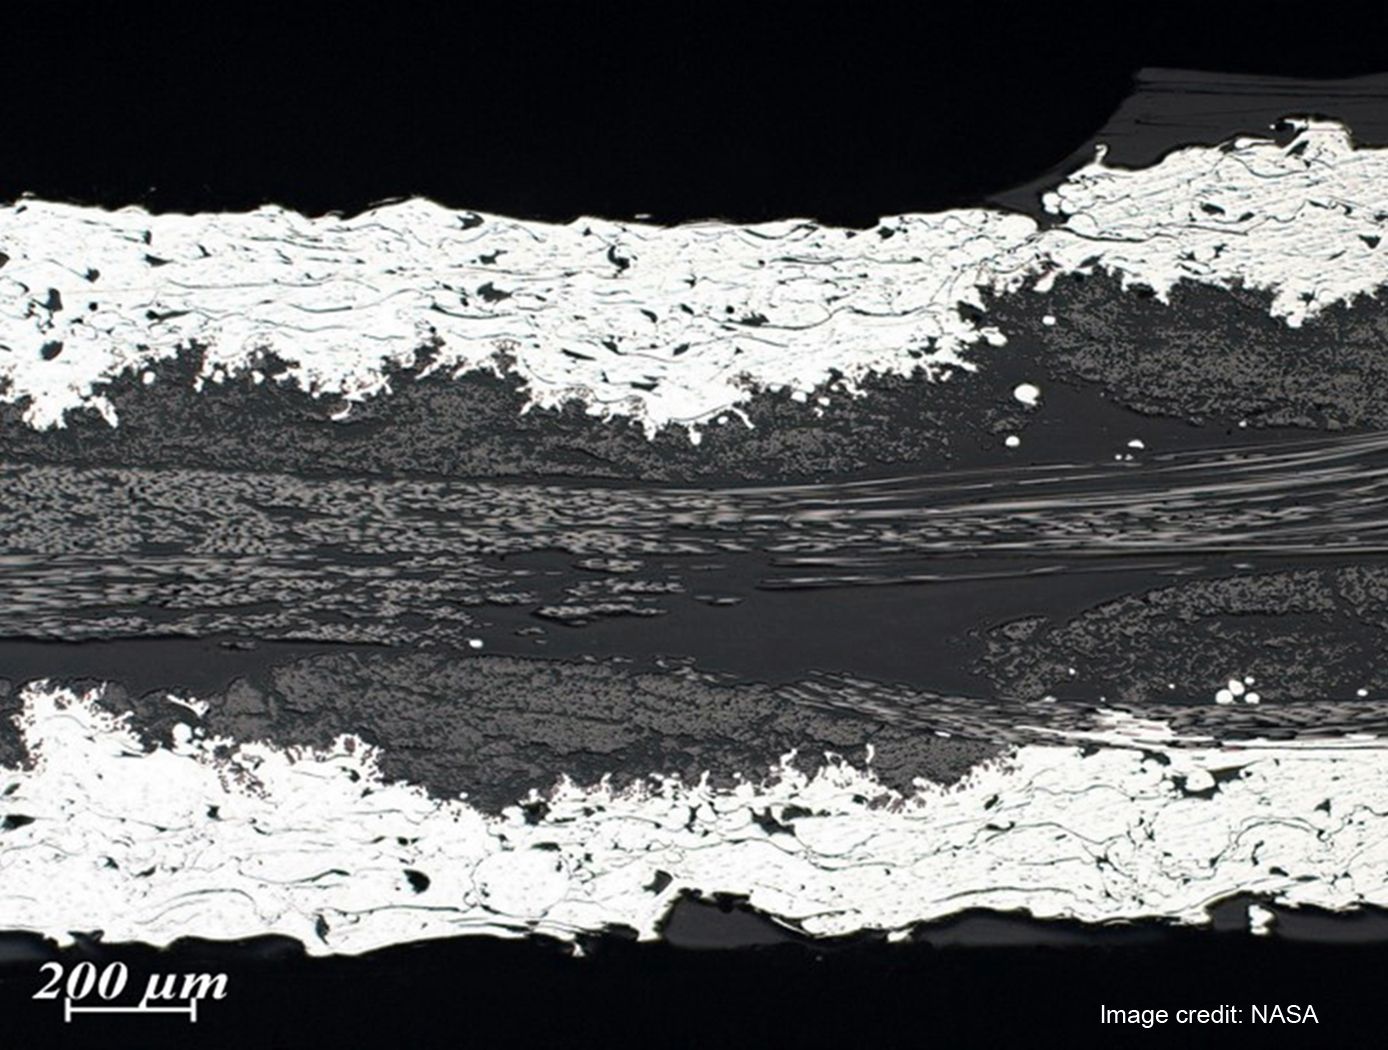 
Photomicrograph of Plasma Metal Coated Fabric. Image credit: NASA